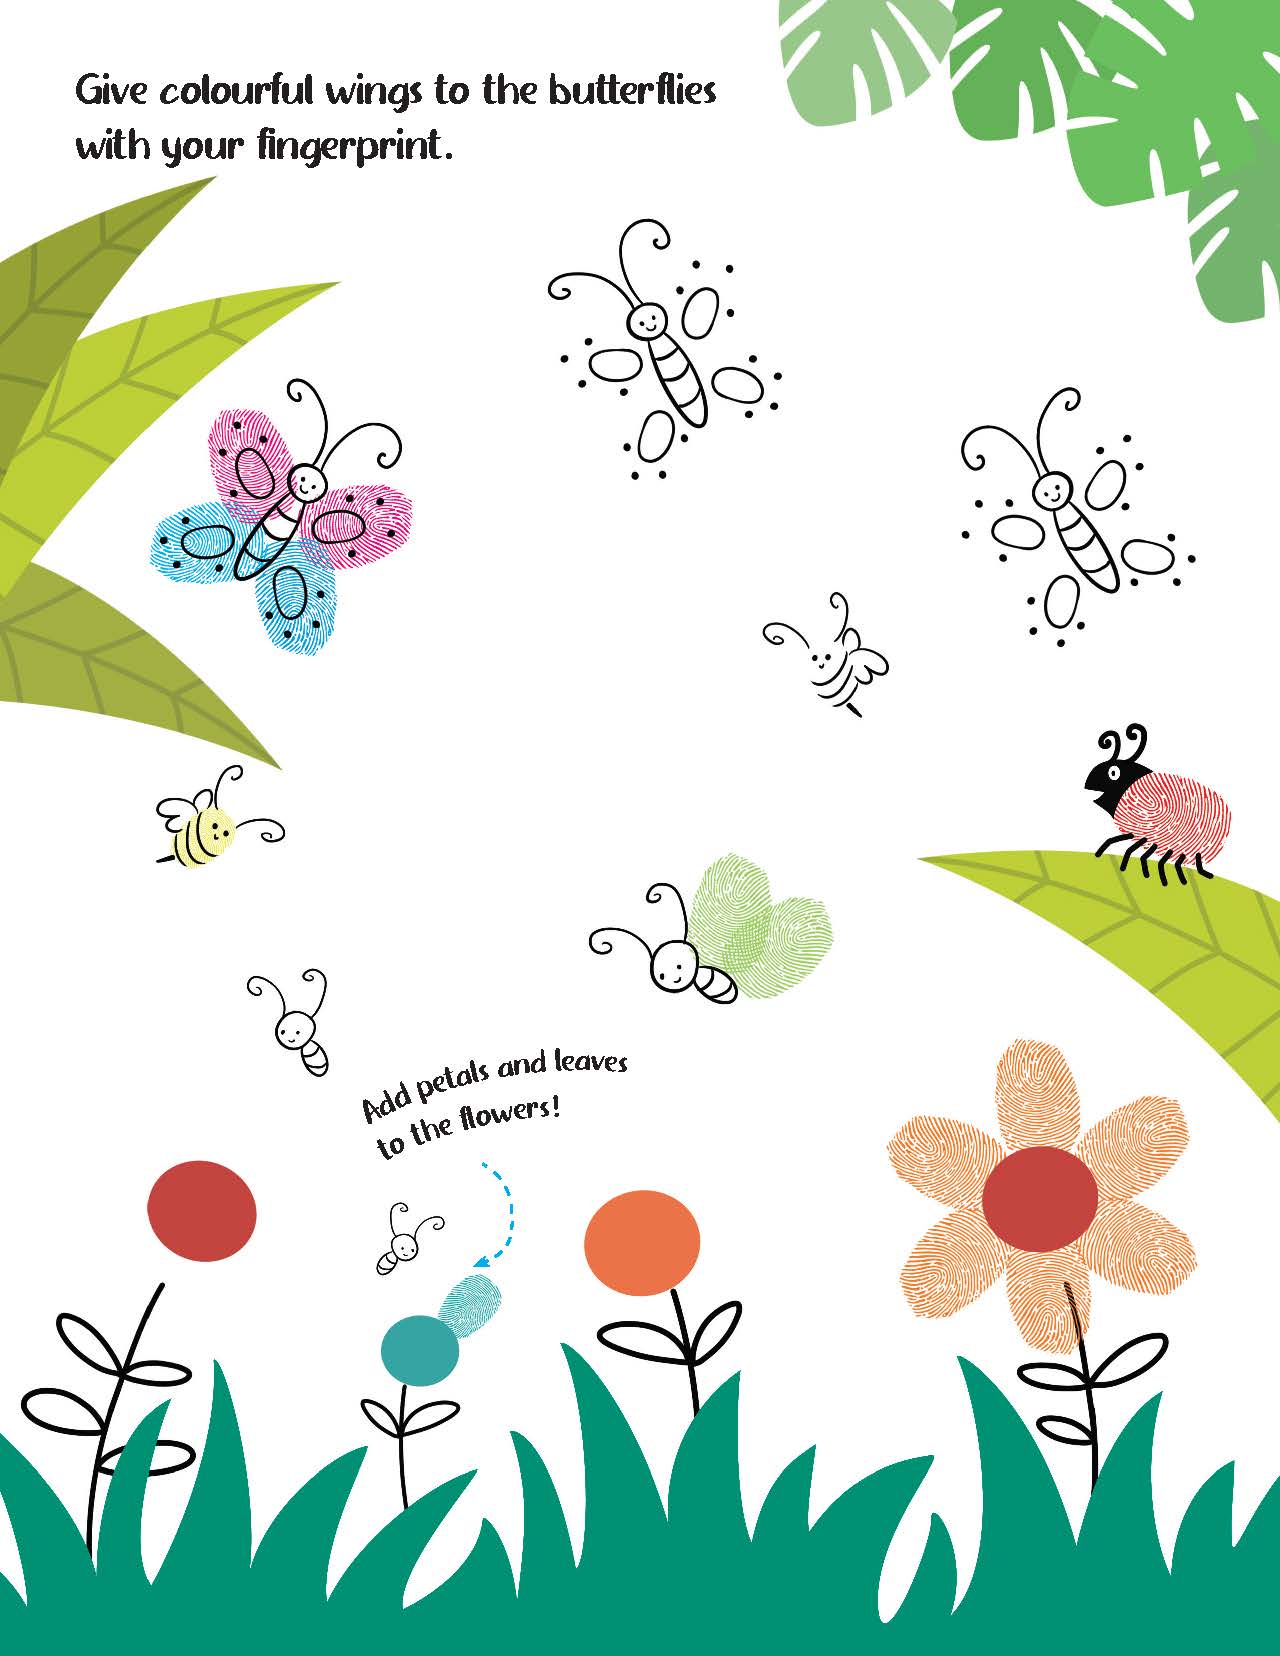 Dreamland Publications Fingerprint Art Activity Book for Children - Jungle with Thumbprint Gadget - Distacart